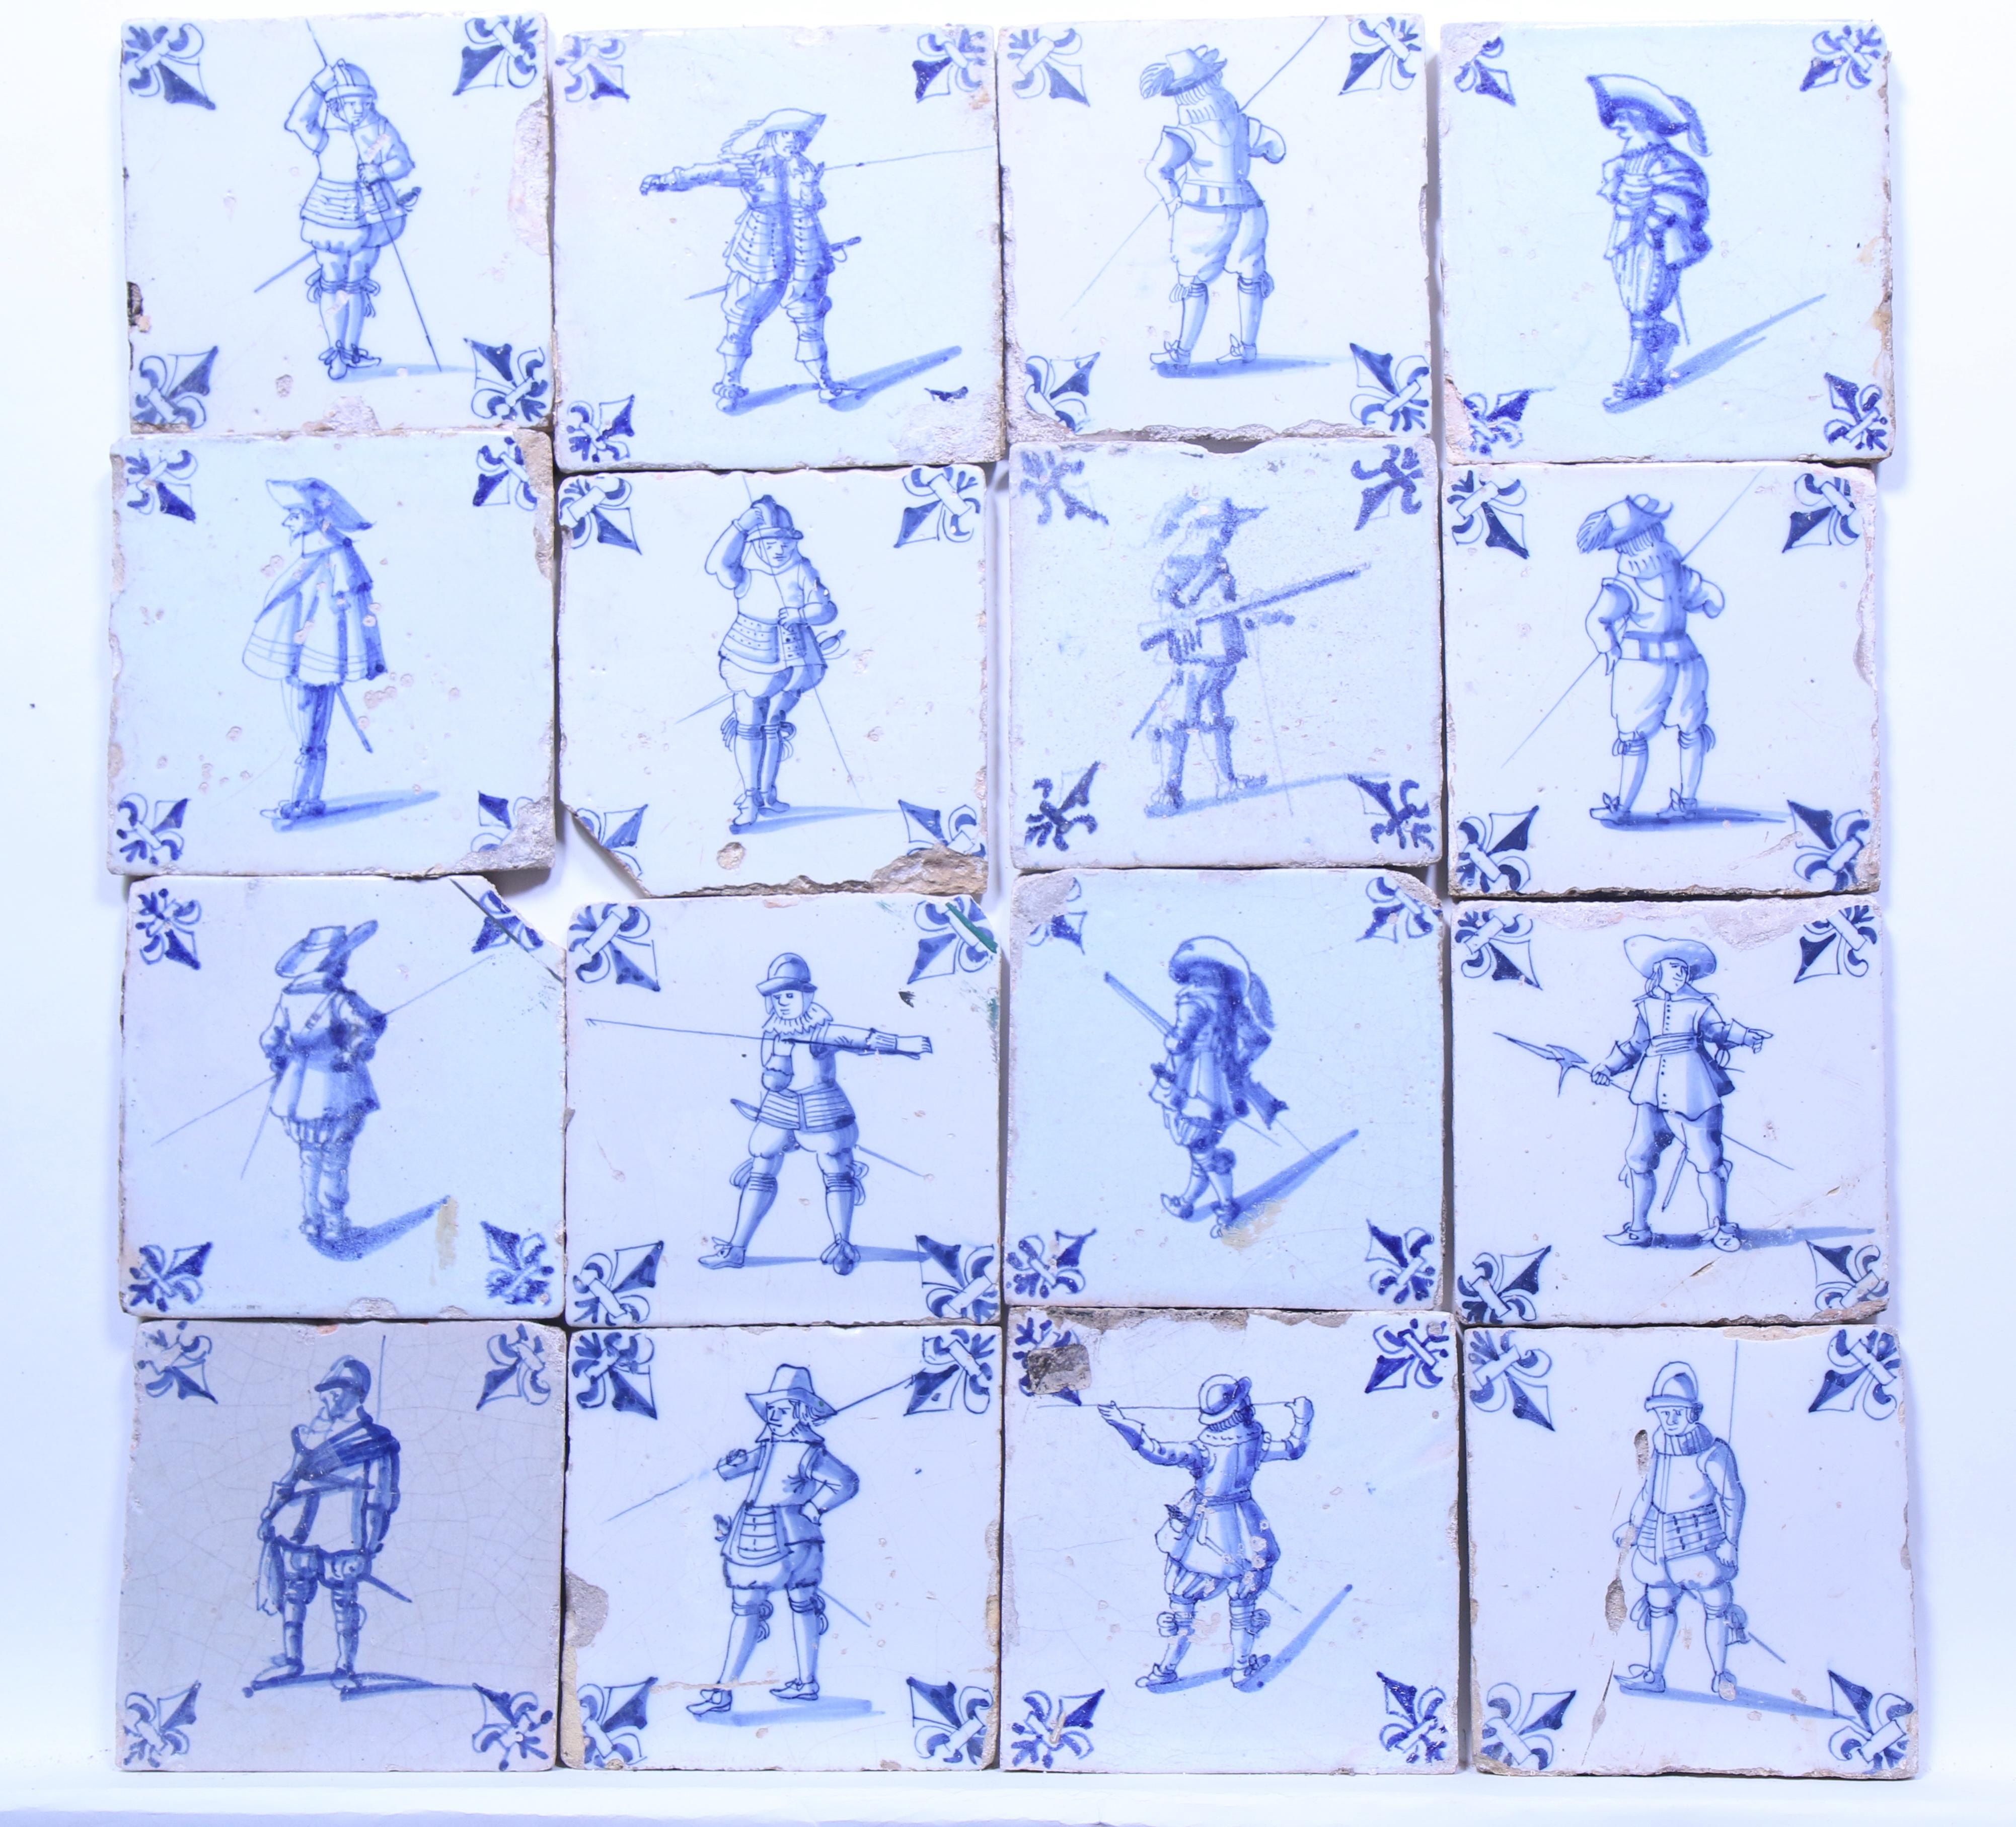 Achttien blauw aardewerk figuurdecor tegels, ca. 1620 - 1650;